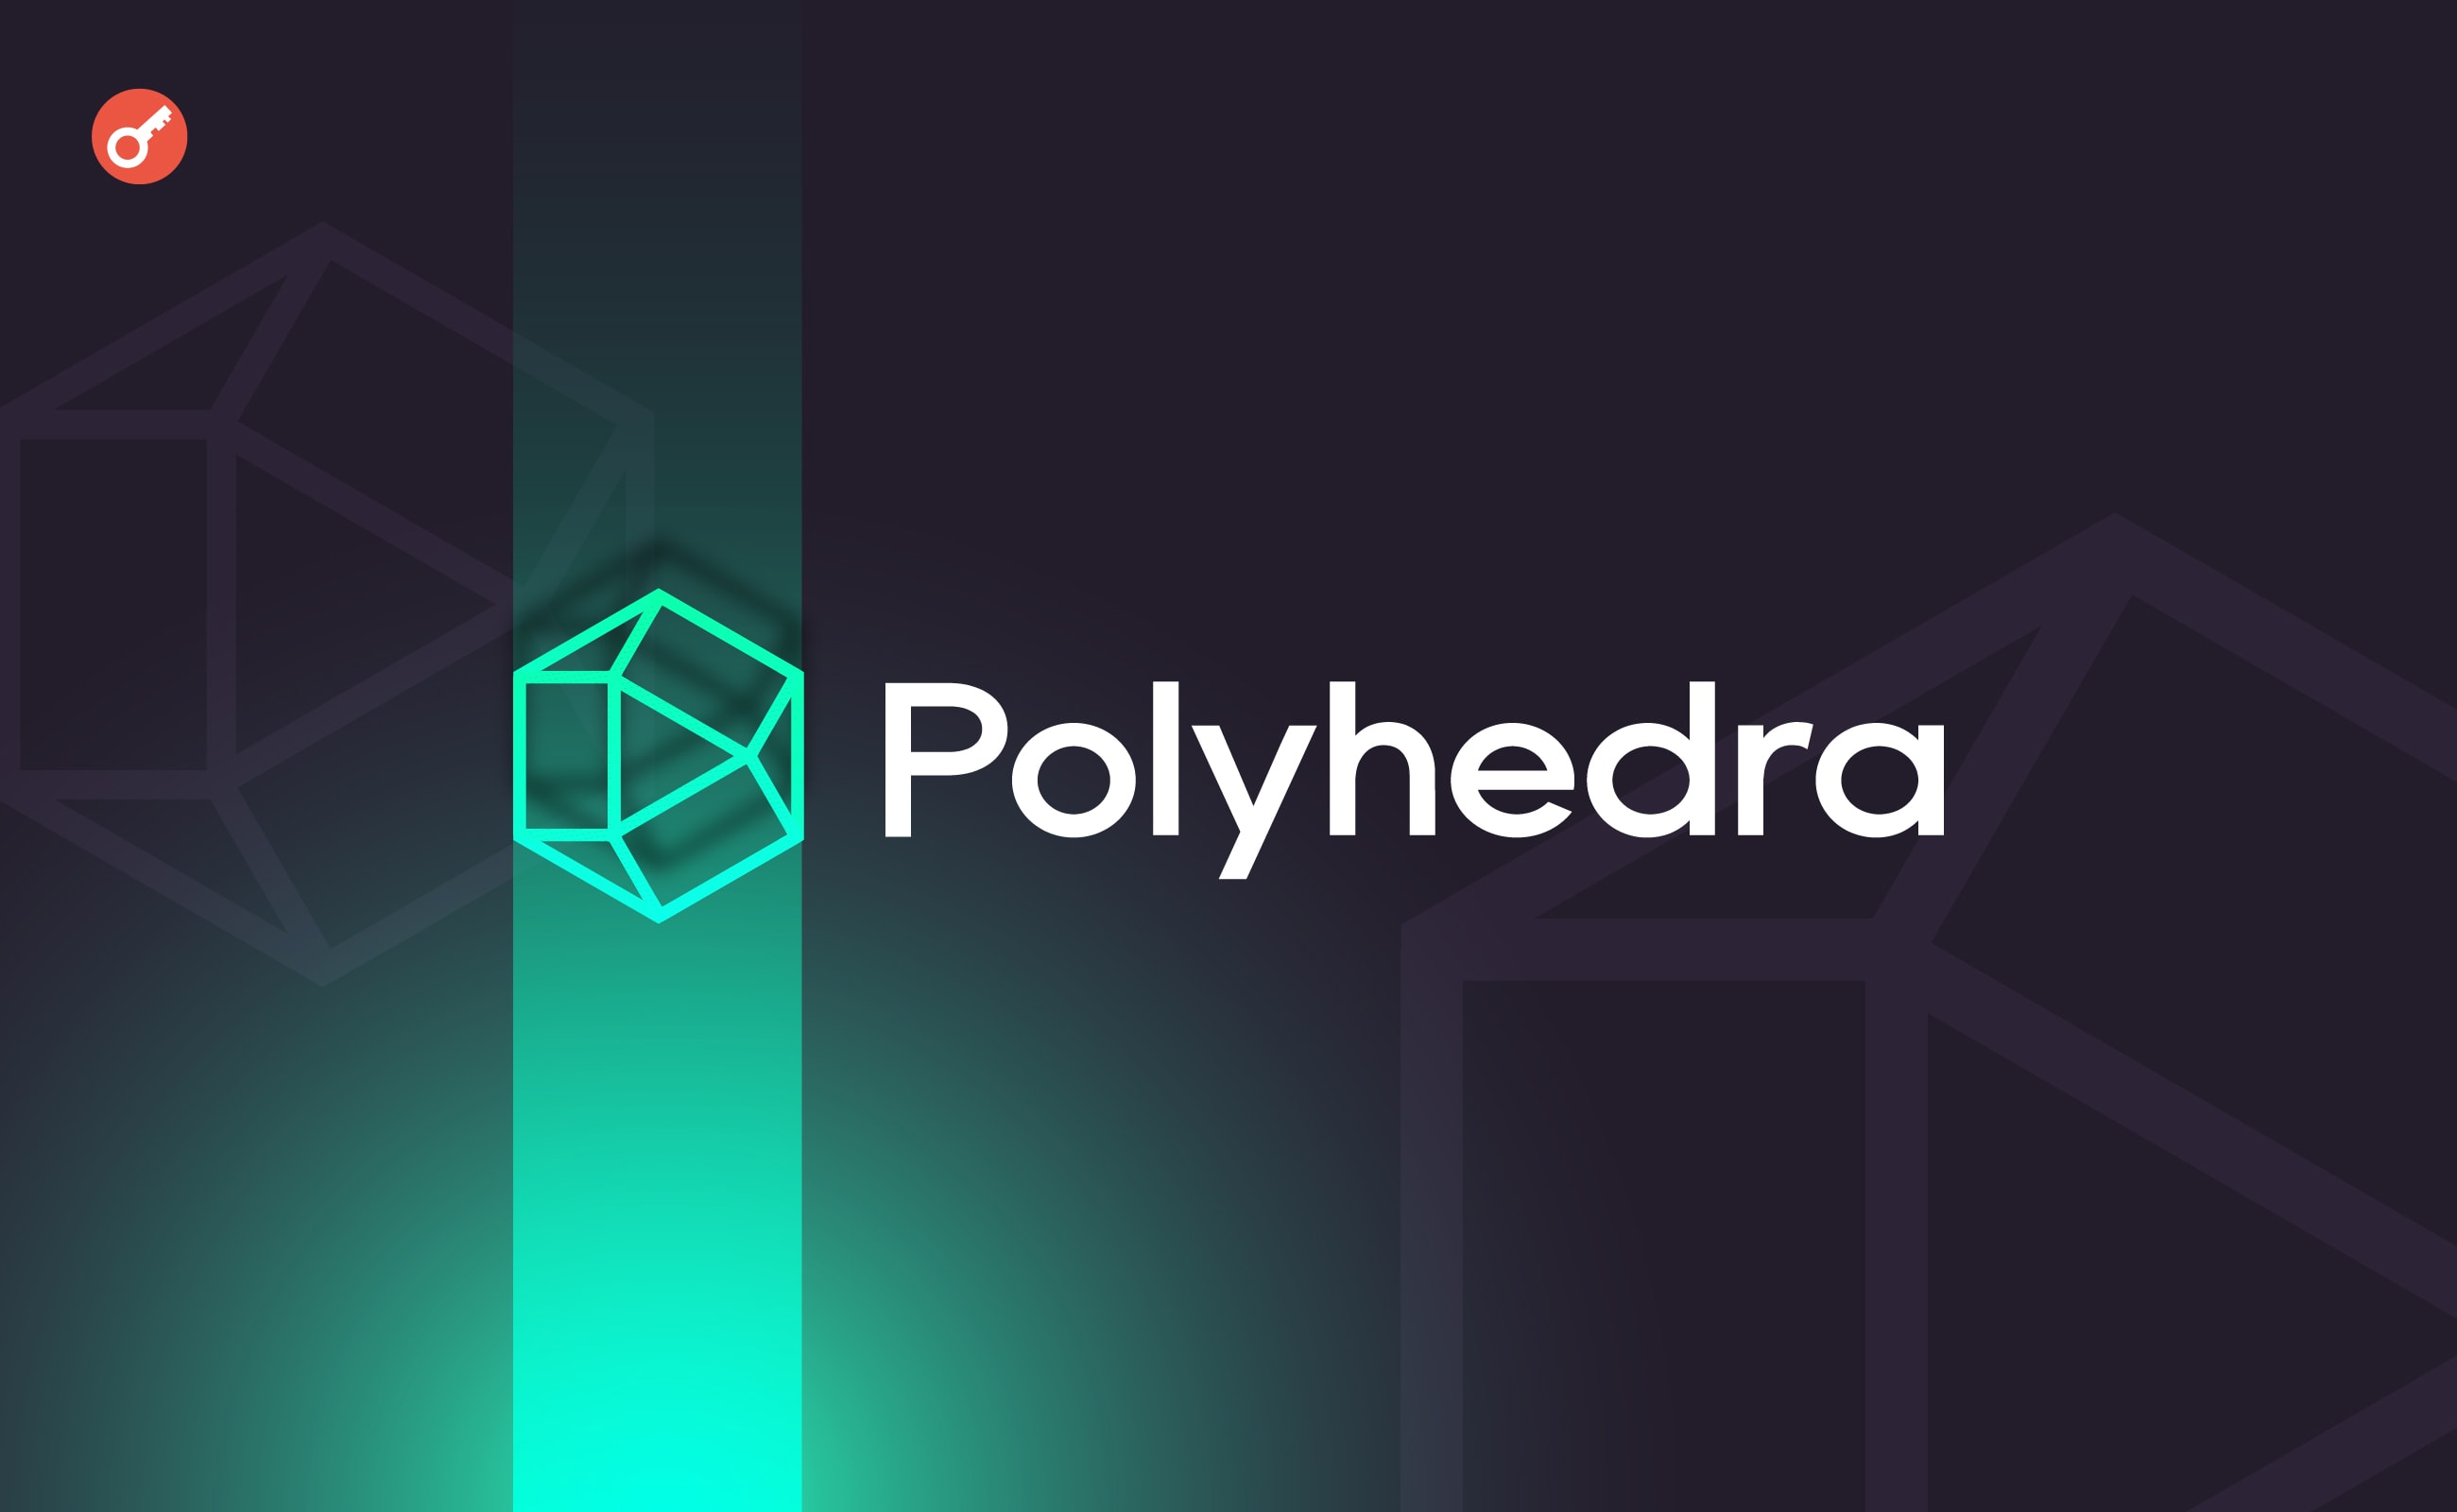 Polyhedra Network залучила $20 млн інвестицій за оцінки в $1 млрд. Головний колаж новини.